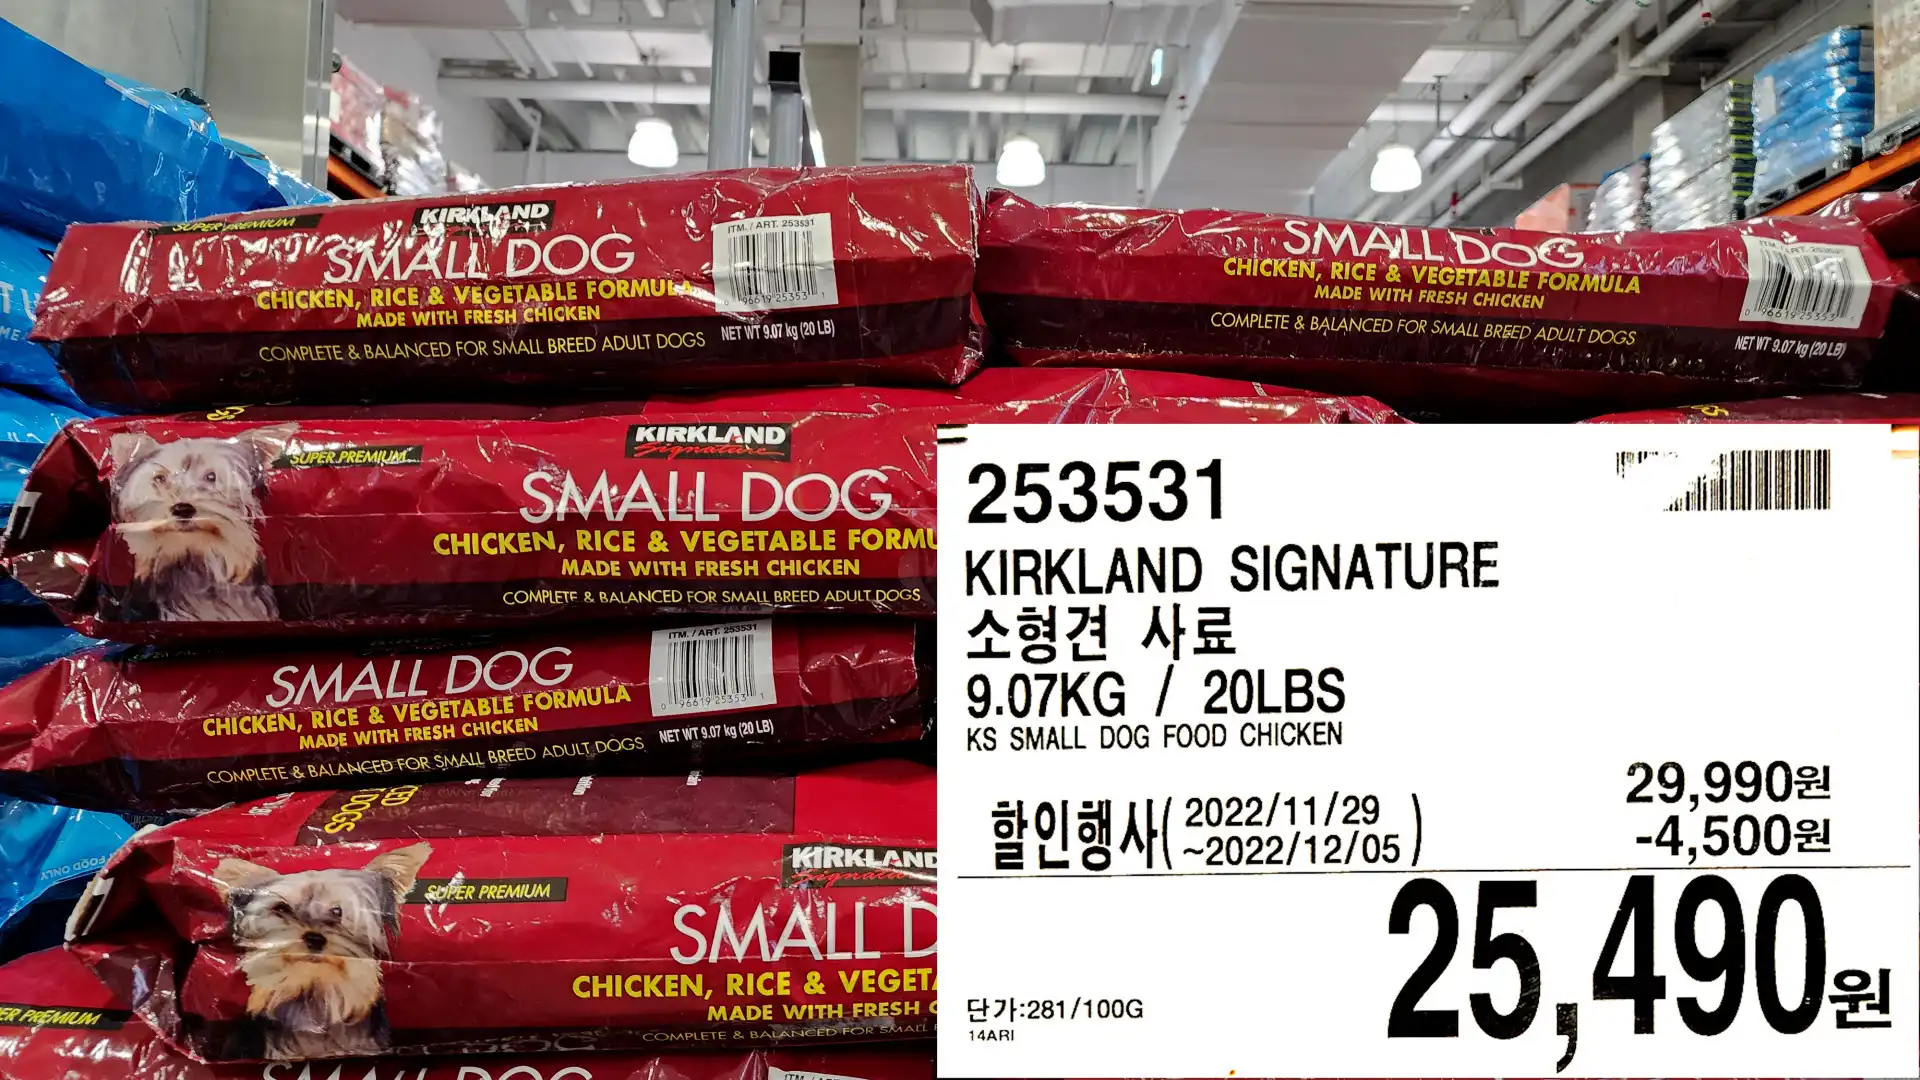 KIRKLAND SIGNATURE
소형견 사료
9.07KG / 20LBS
KS SMALL DOG FOOD CHICKEN
25&#44;490원